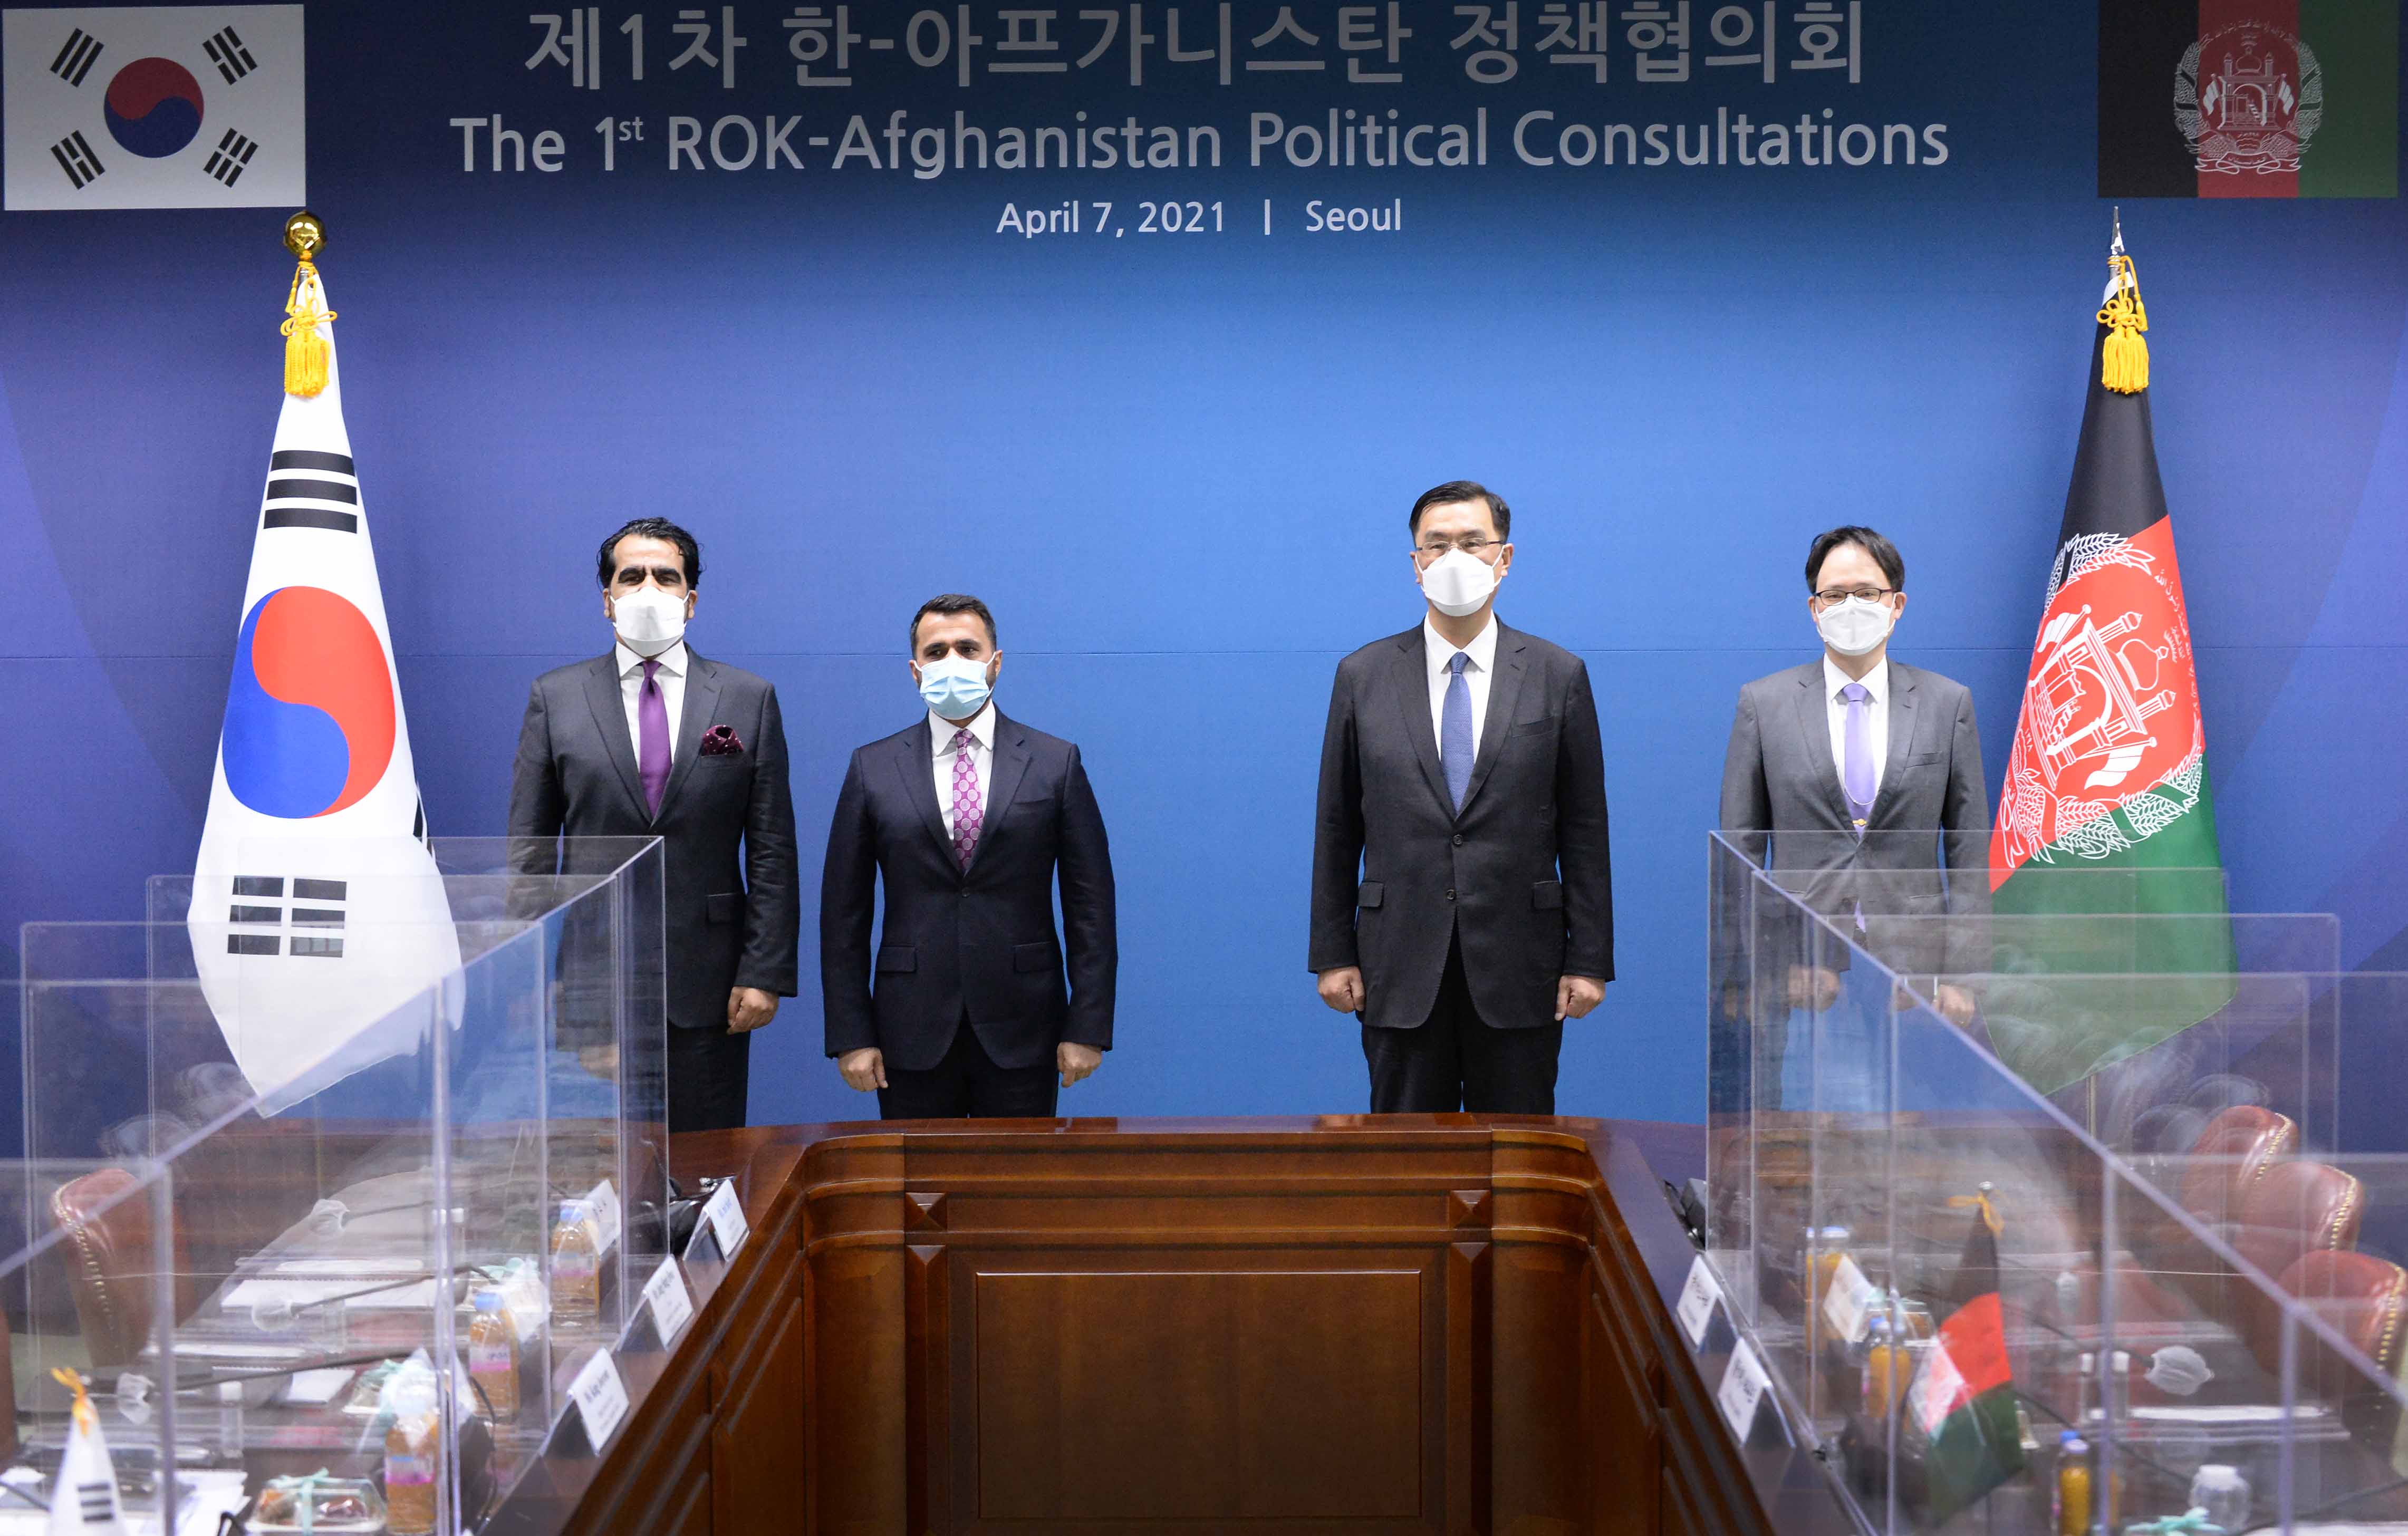 이경철(오른쪽 두 번째) 외교부 아프가니스탄·파키스탄 특별대표가 7일 제1차 한·아프가니스탄 정책협의회를 연 뒤 참석자들과 함께 기념촬영을 하고 있다. 외교부 제공